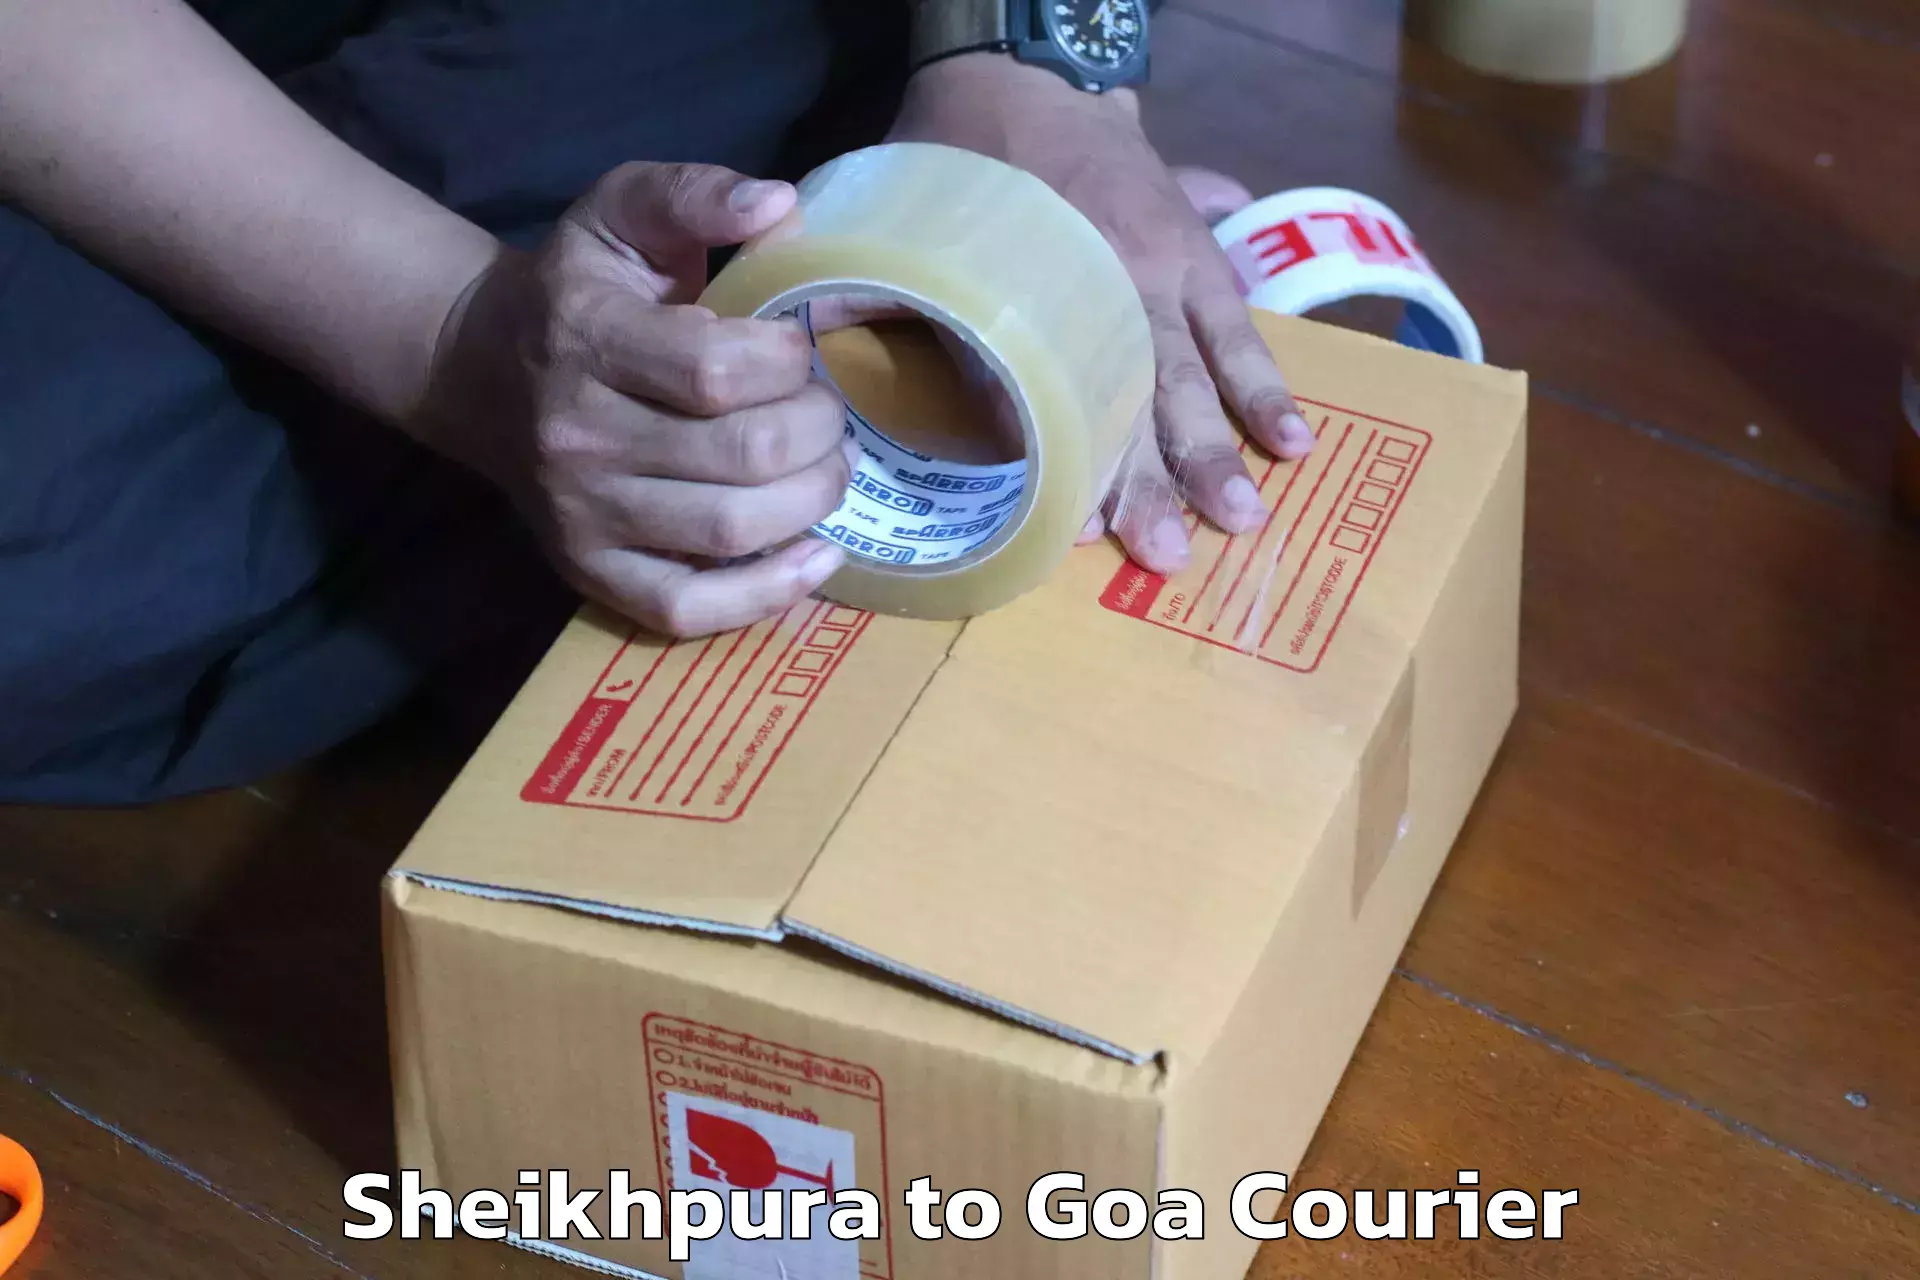 Reliable movers Sheikhpura to IIT Goa